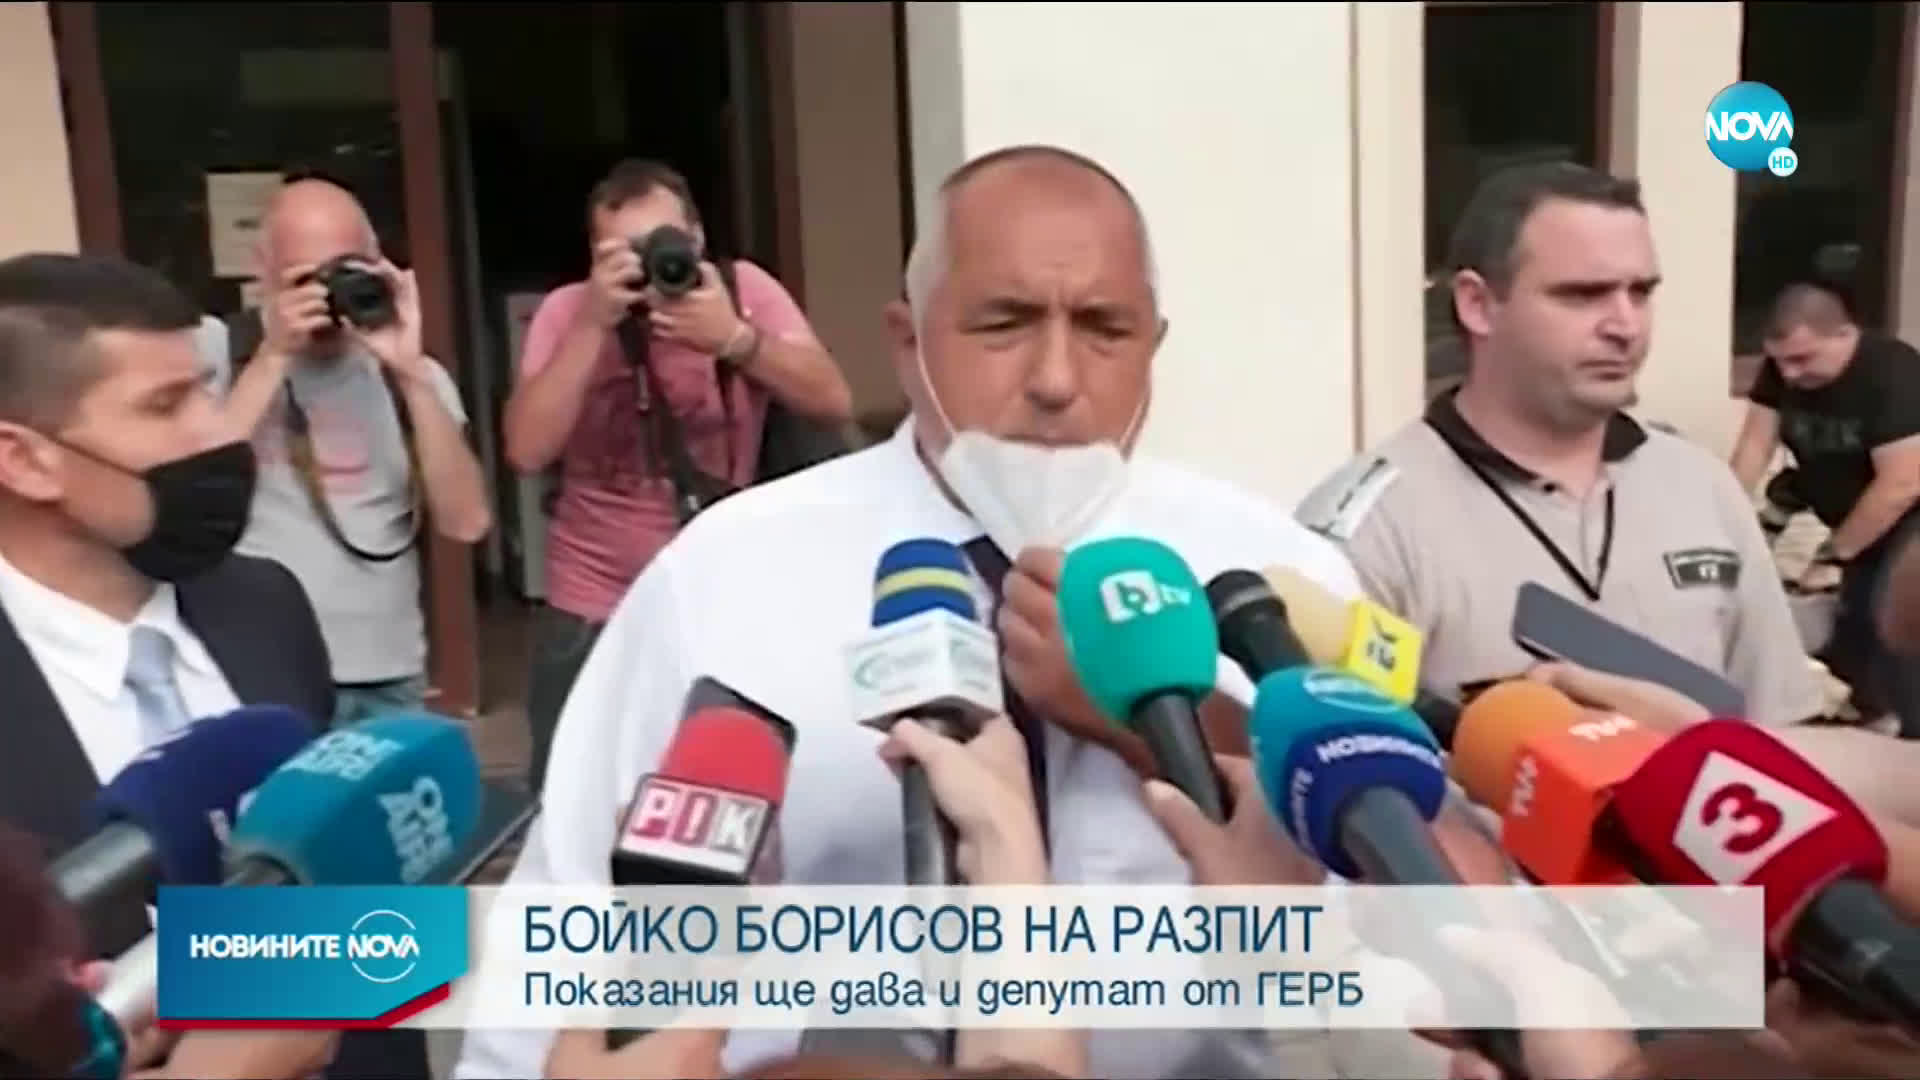 Борисов: Прокуратурата прави тези публични събития, за да се угоди на президента